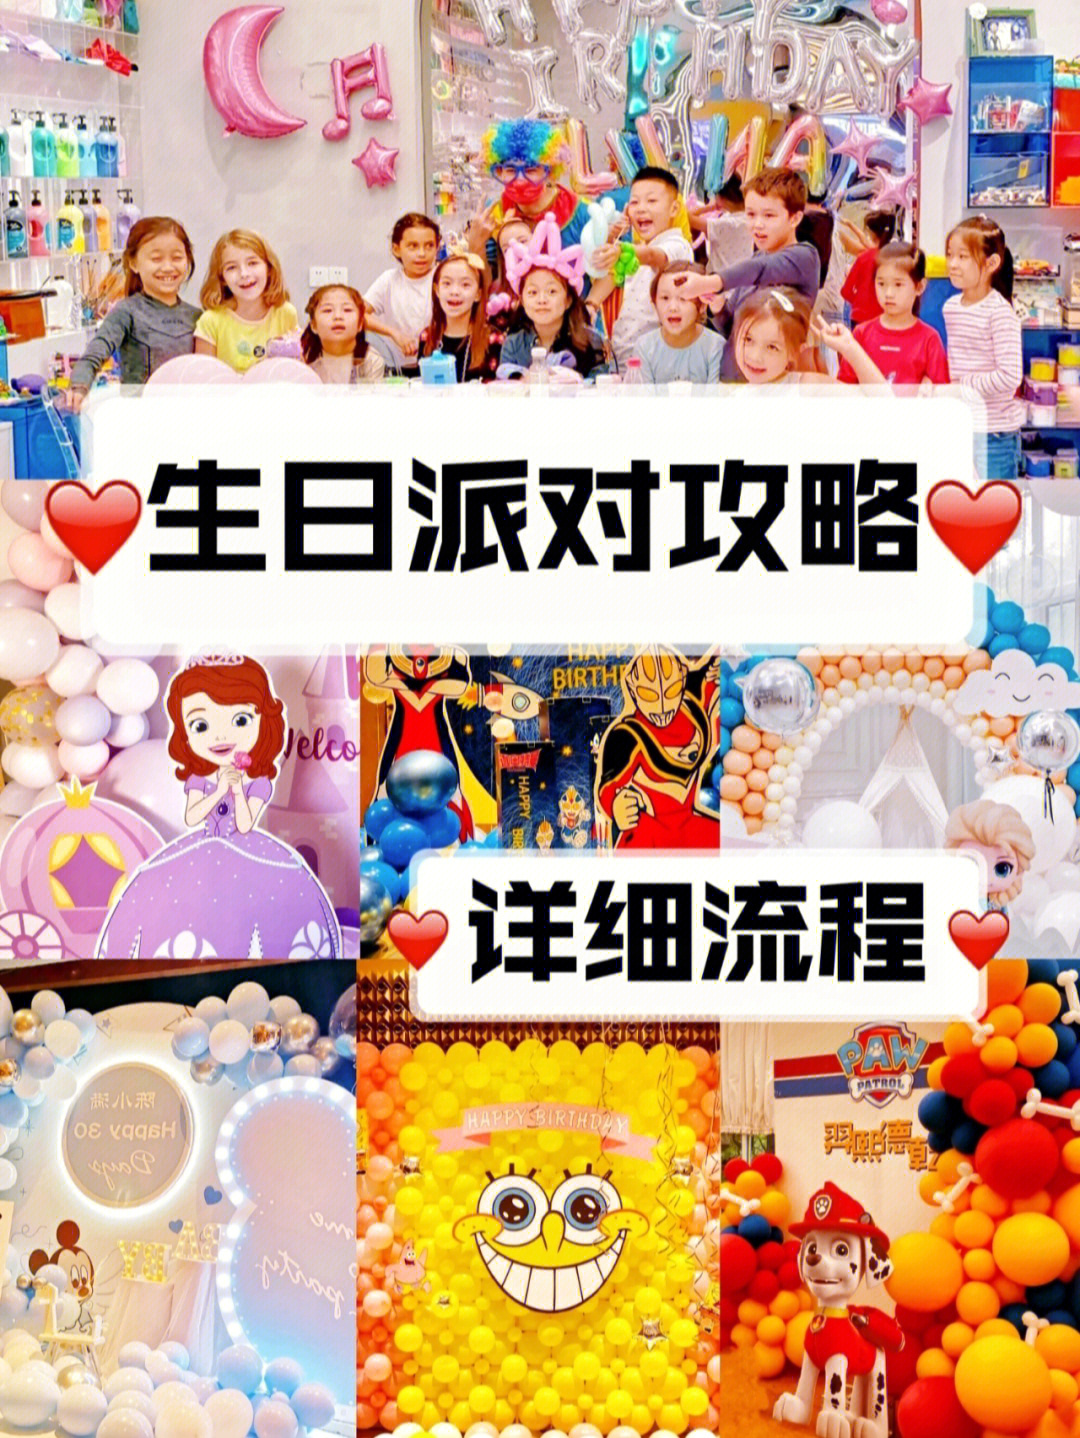 75上海最全小朋友生日派对流程